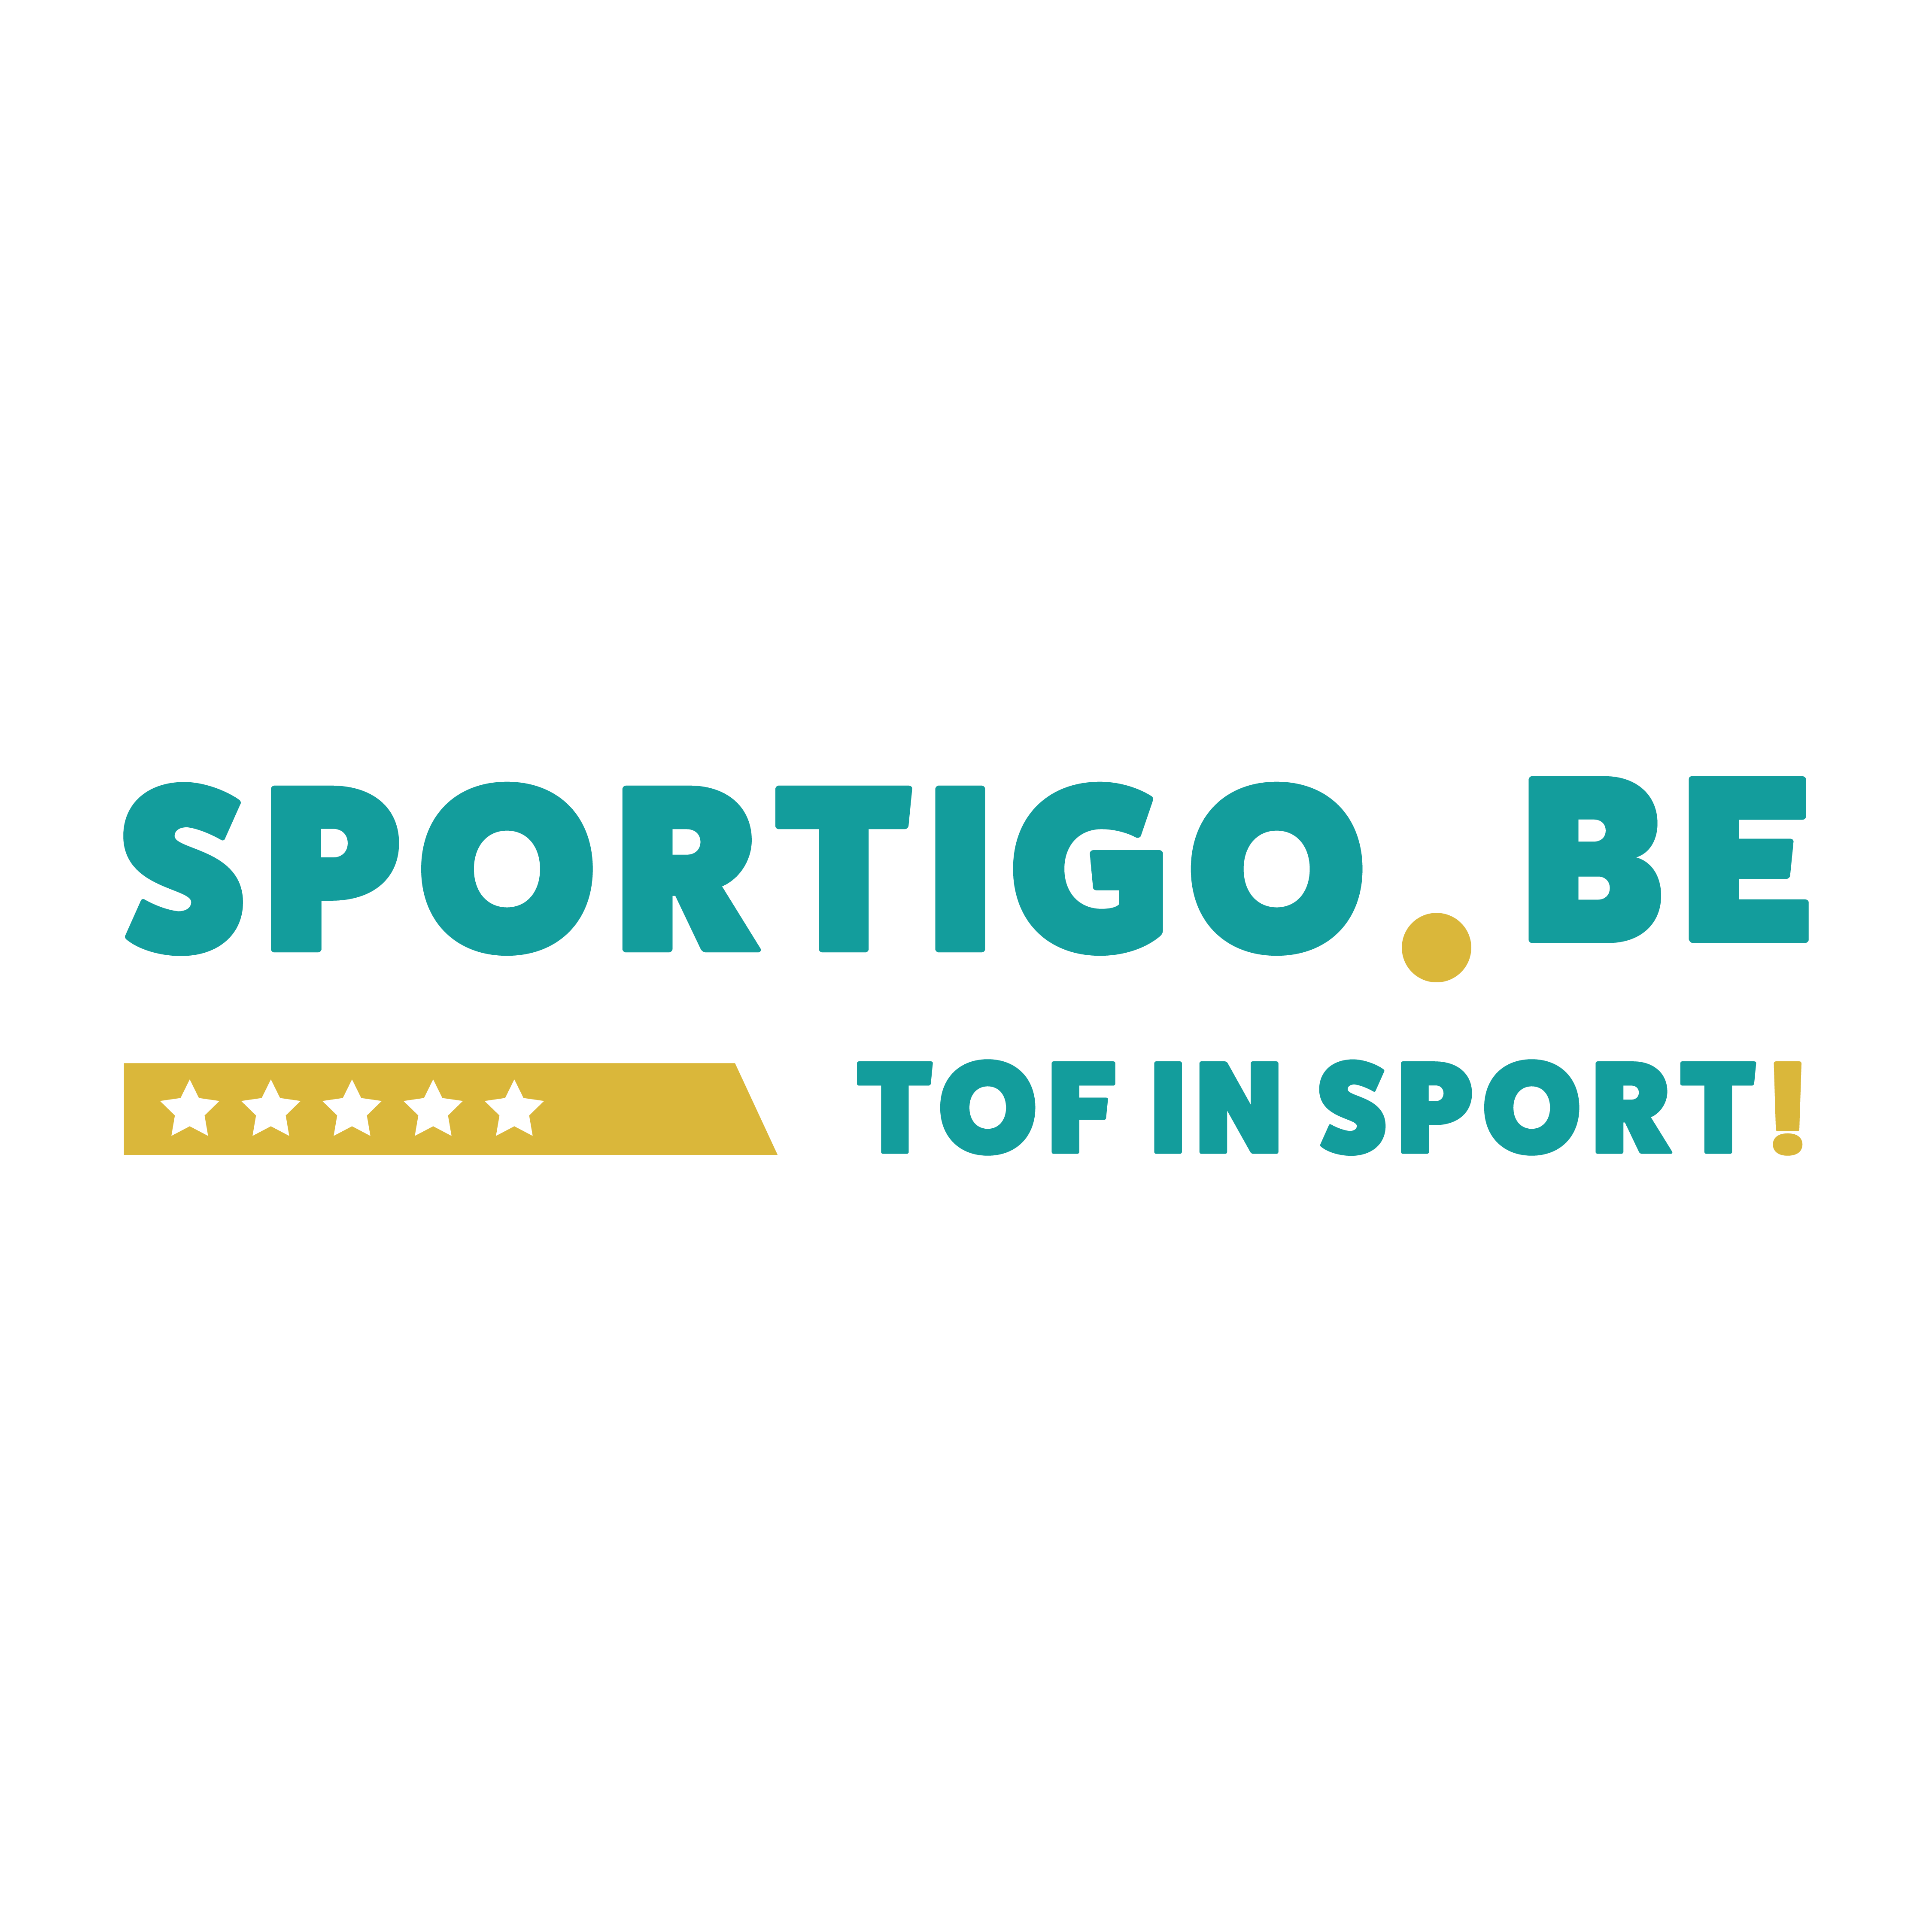 Sportigo